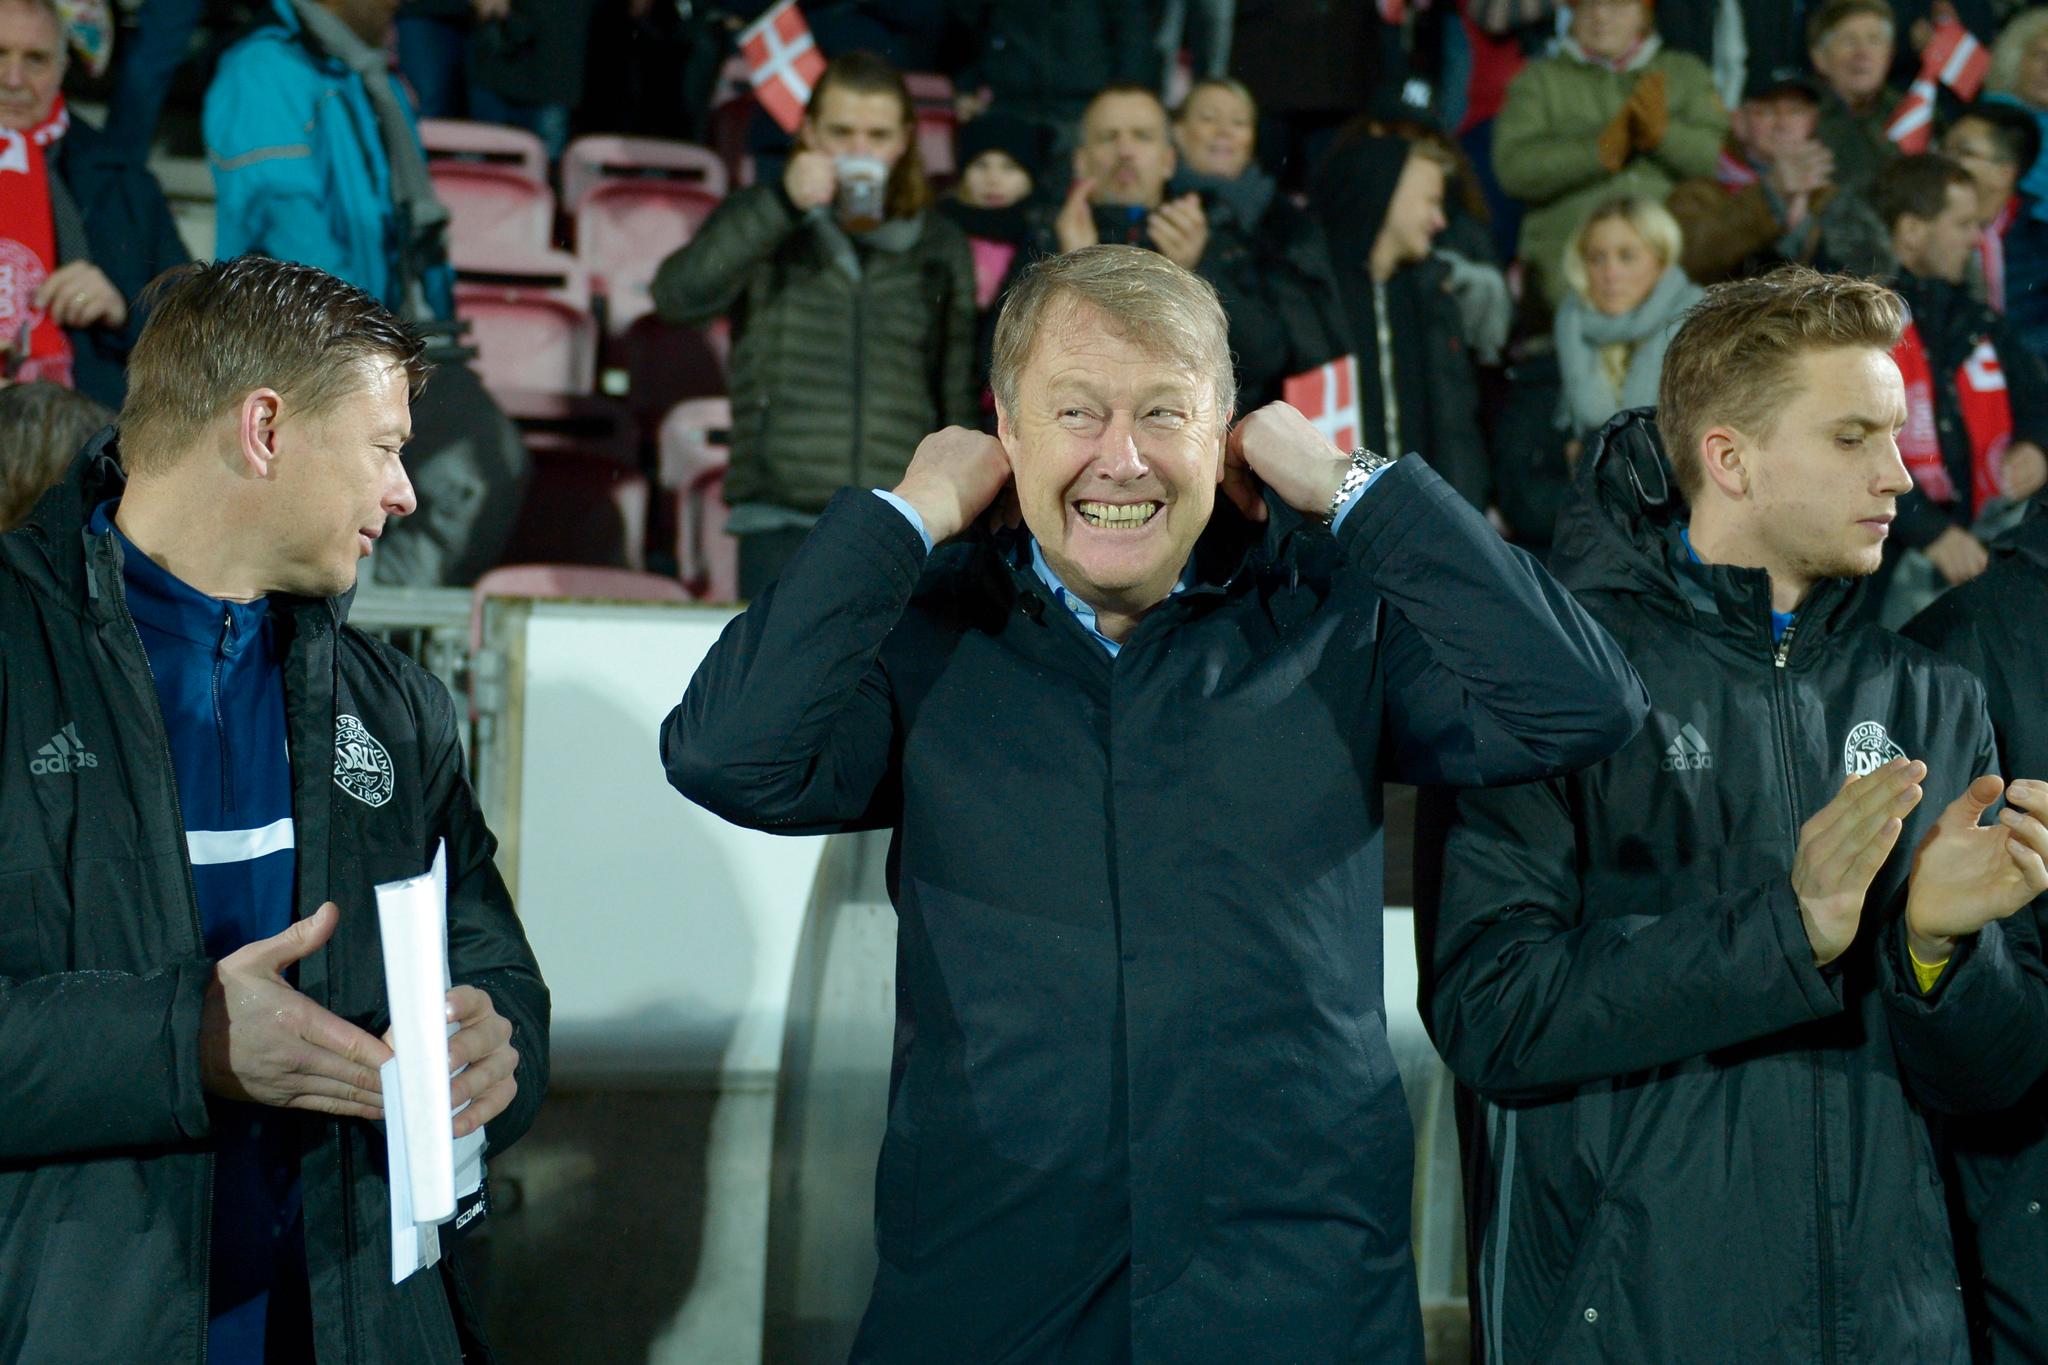 GLISTE GODT: Åge Hareide debuterte som dansk landslagssjef med 2-1-seier over Island.